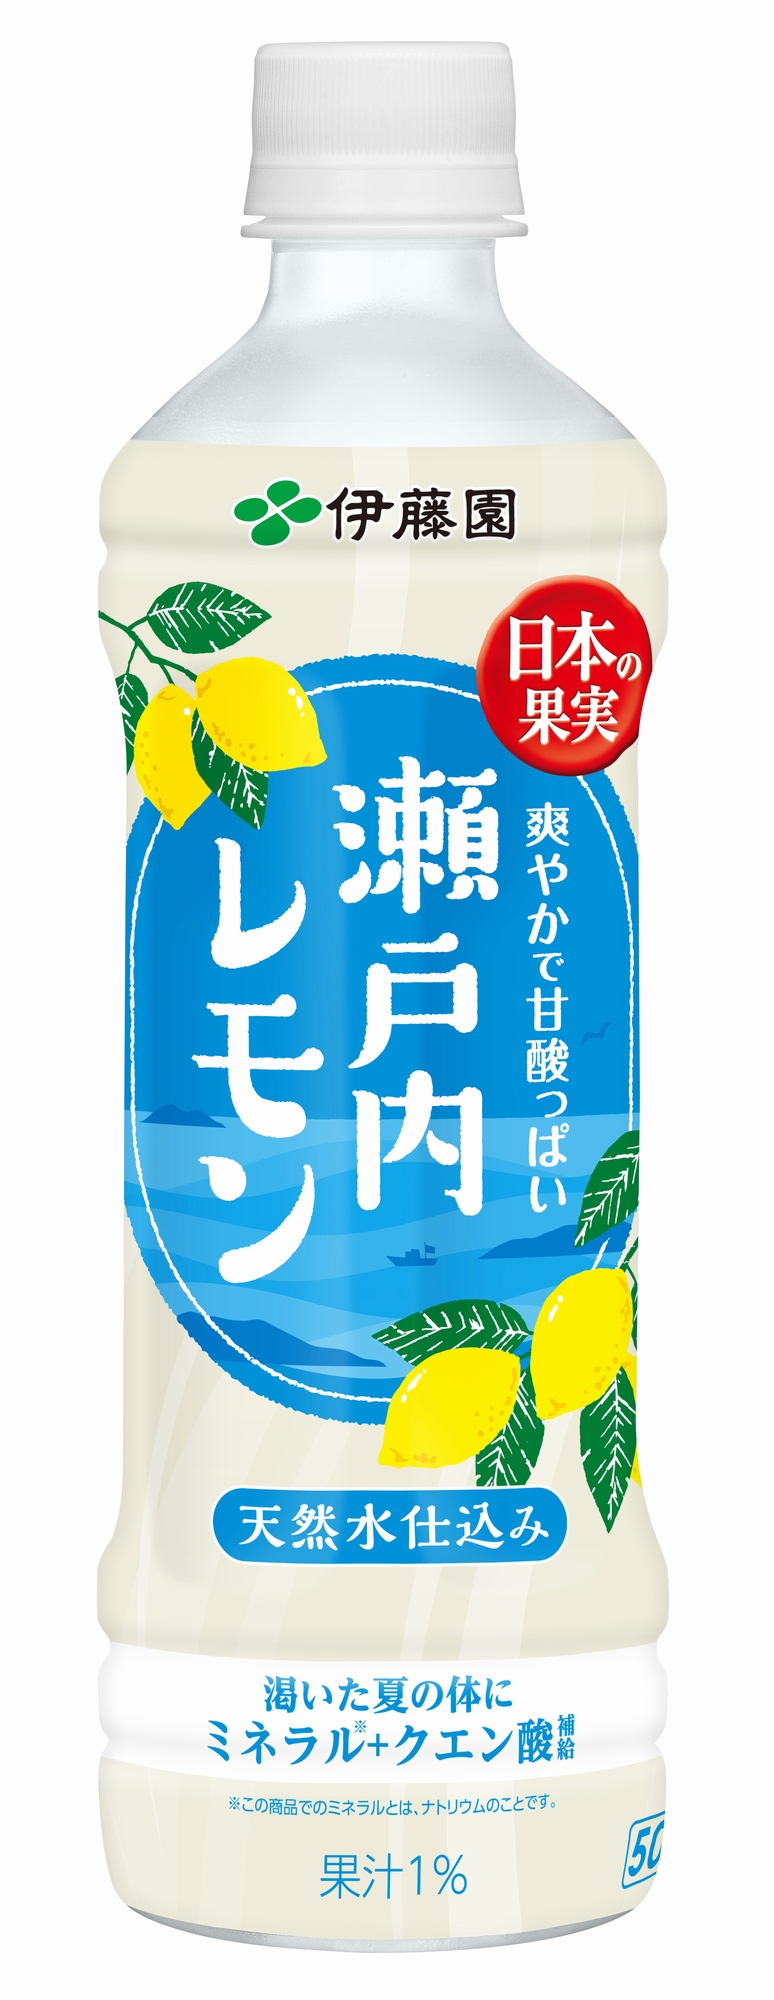 「日本の果実 瀬戸内レモン」500gペットボトル